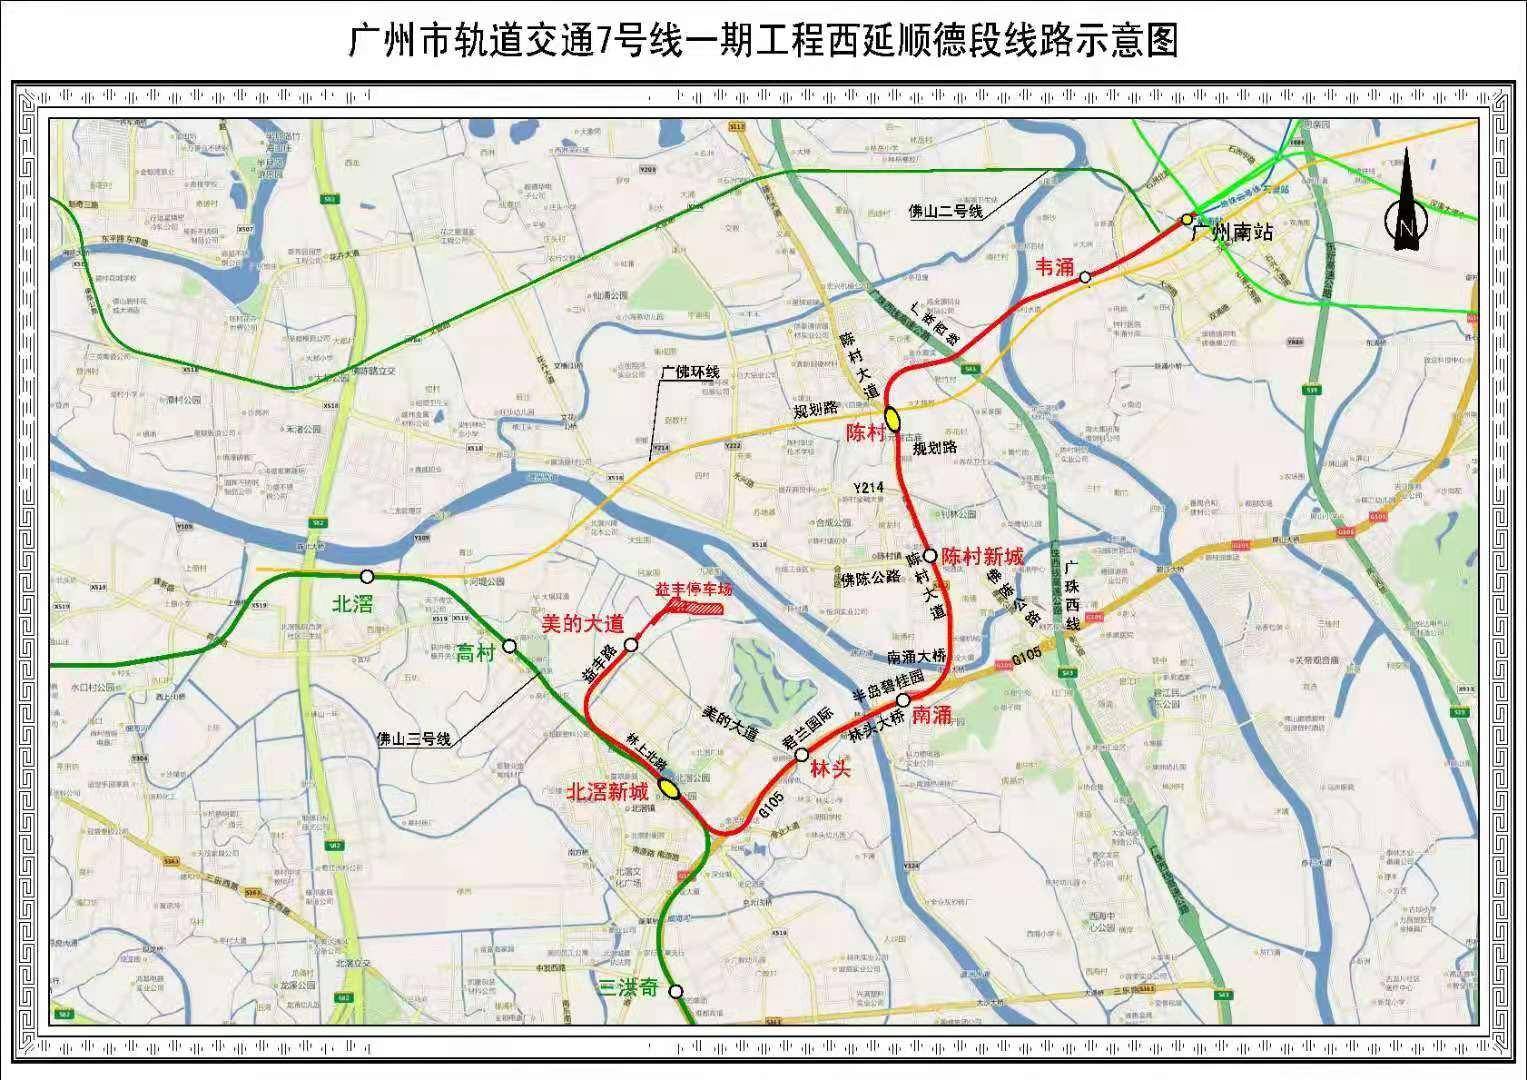 又一跨城线路!广州地铁七号线西延顺德段全线短轨贯通